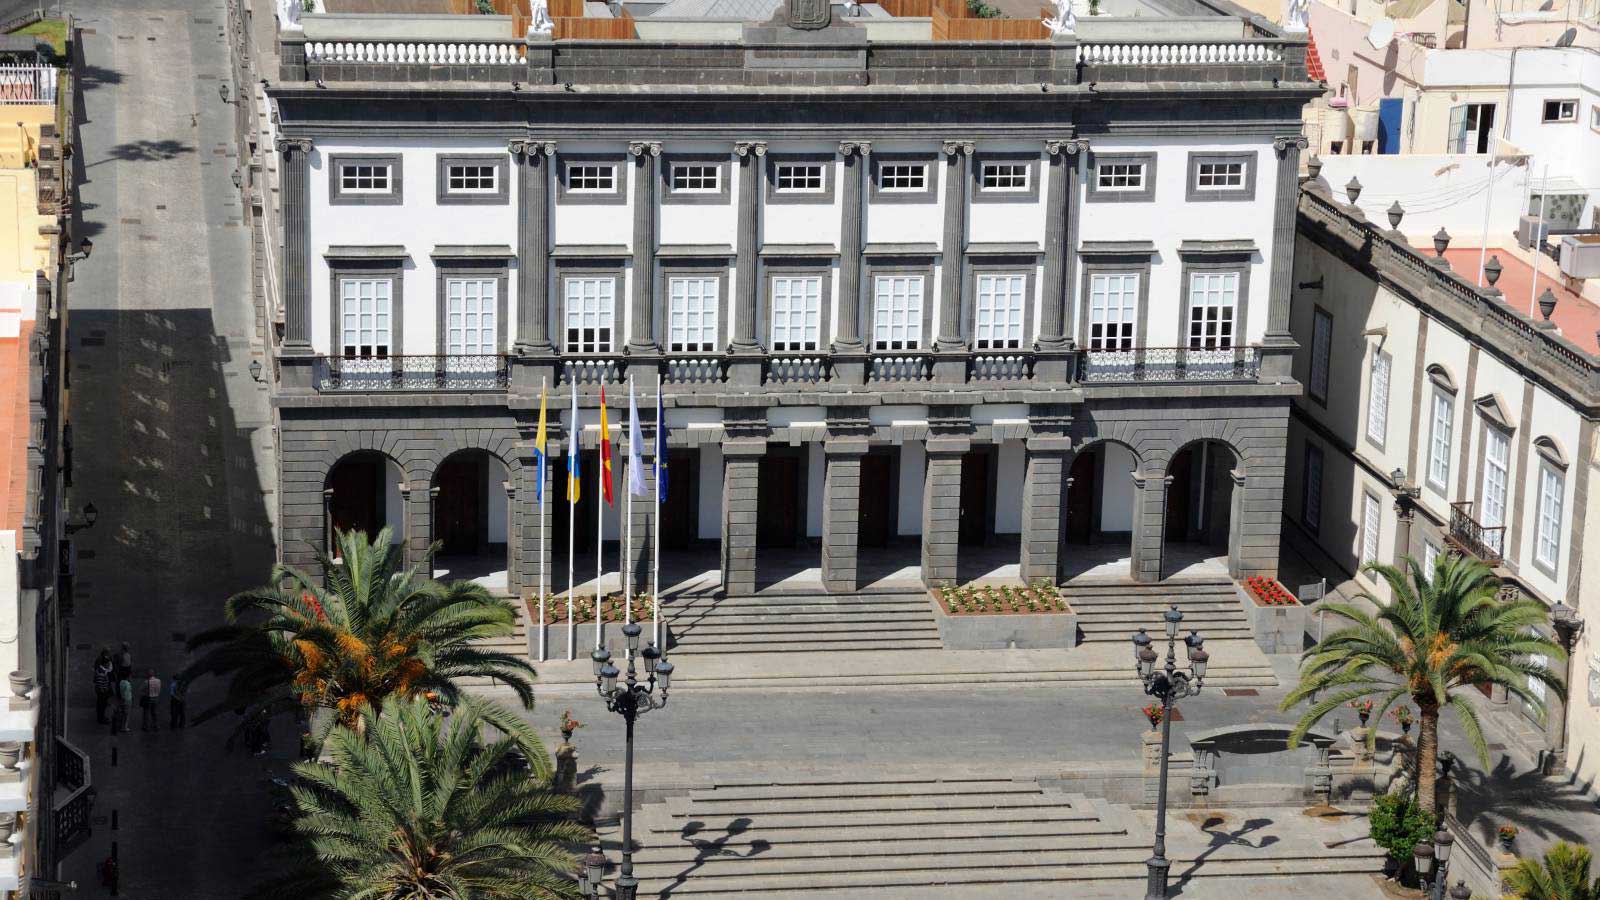 Ayuntamiento de Las Palmas de Gran Canaria